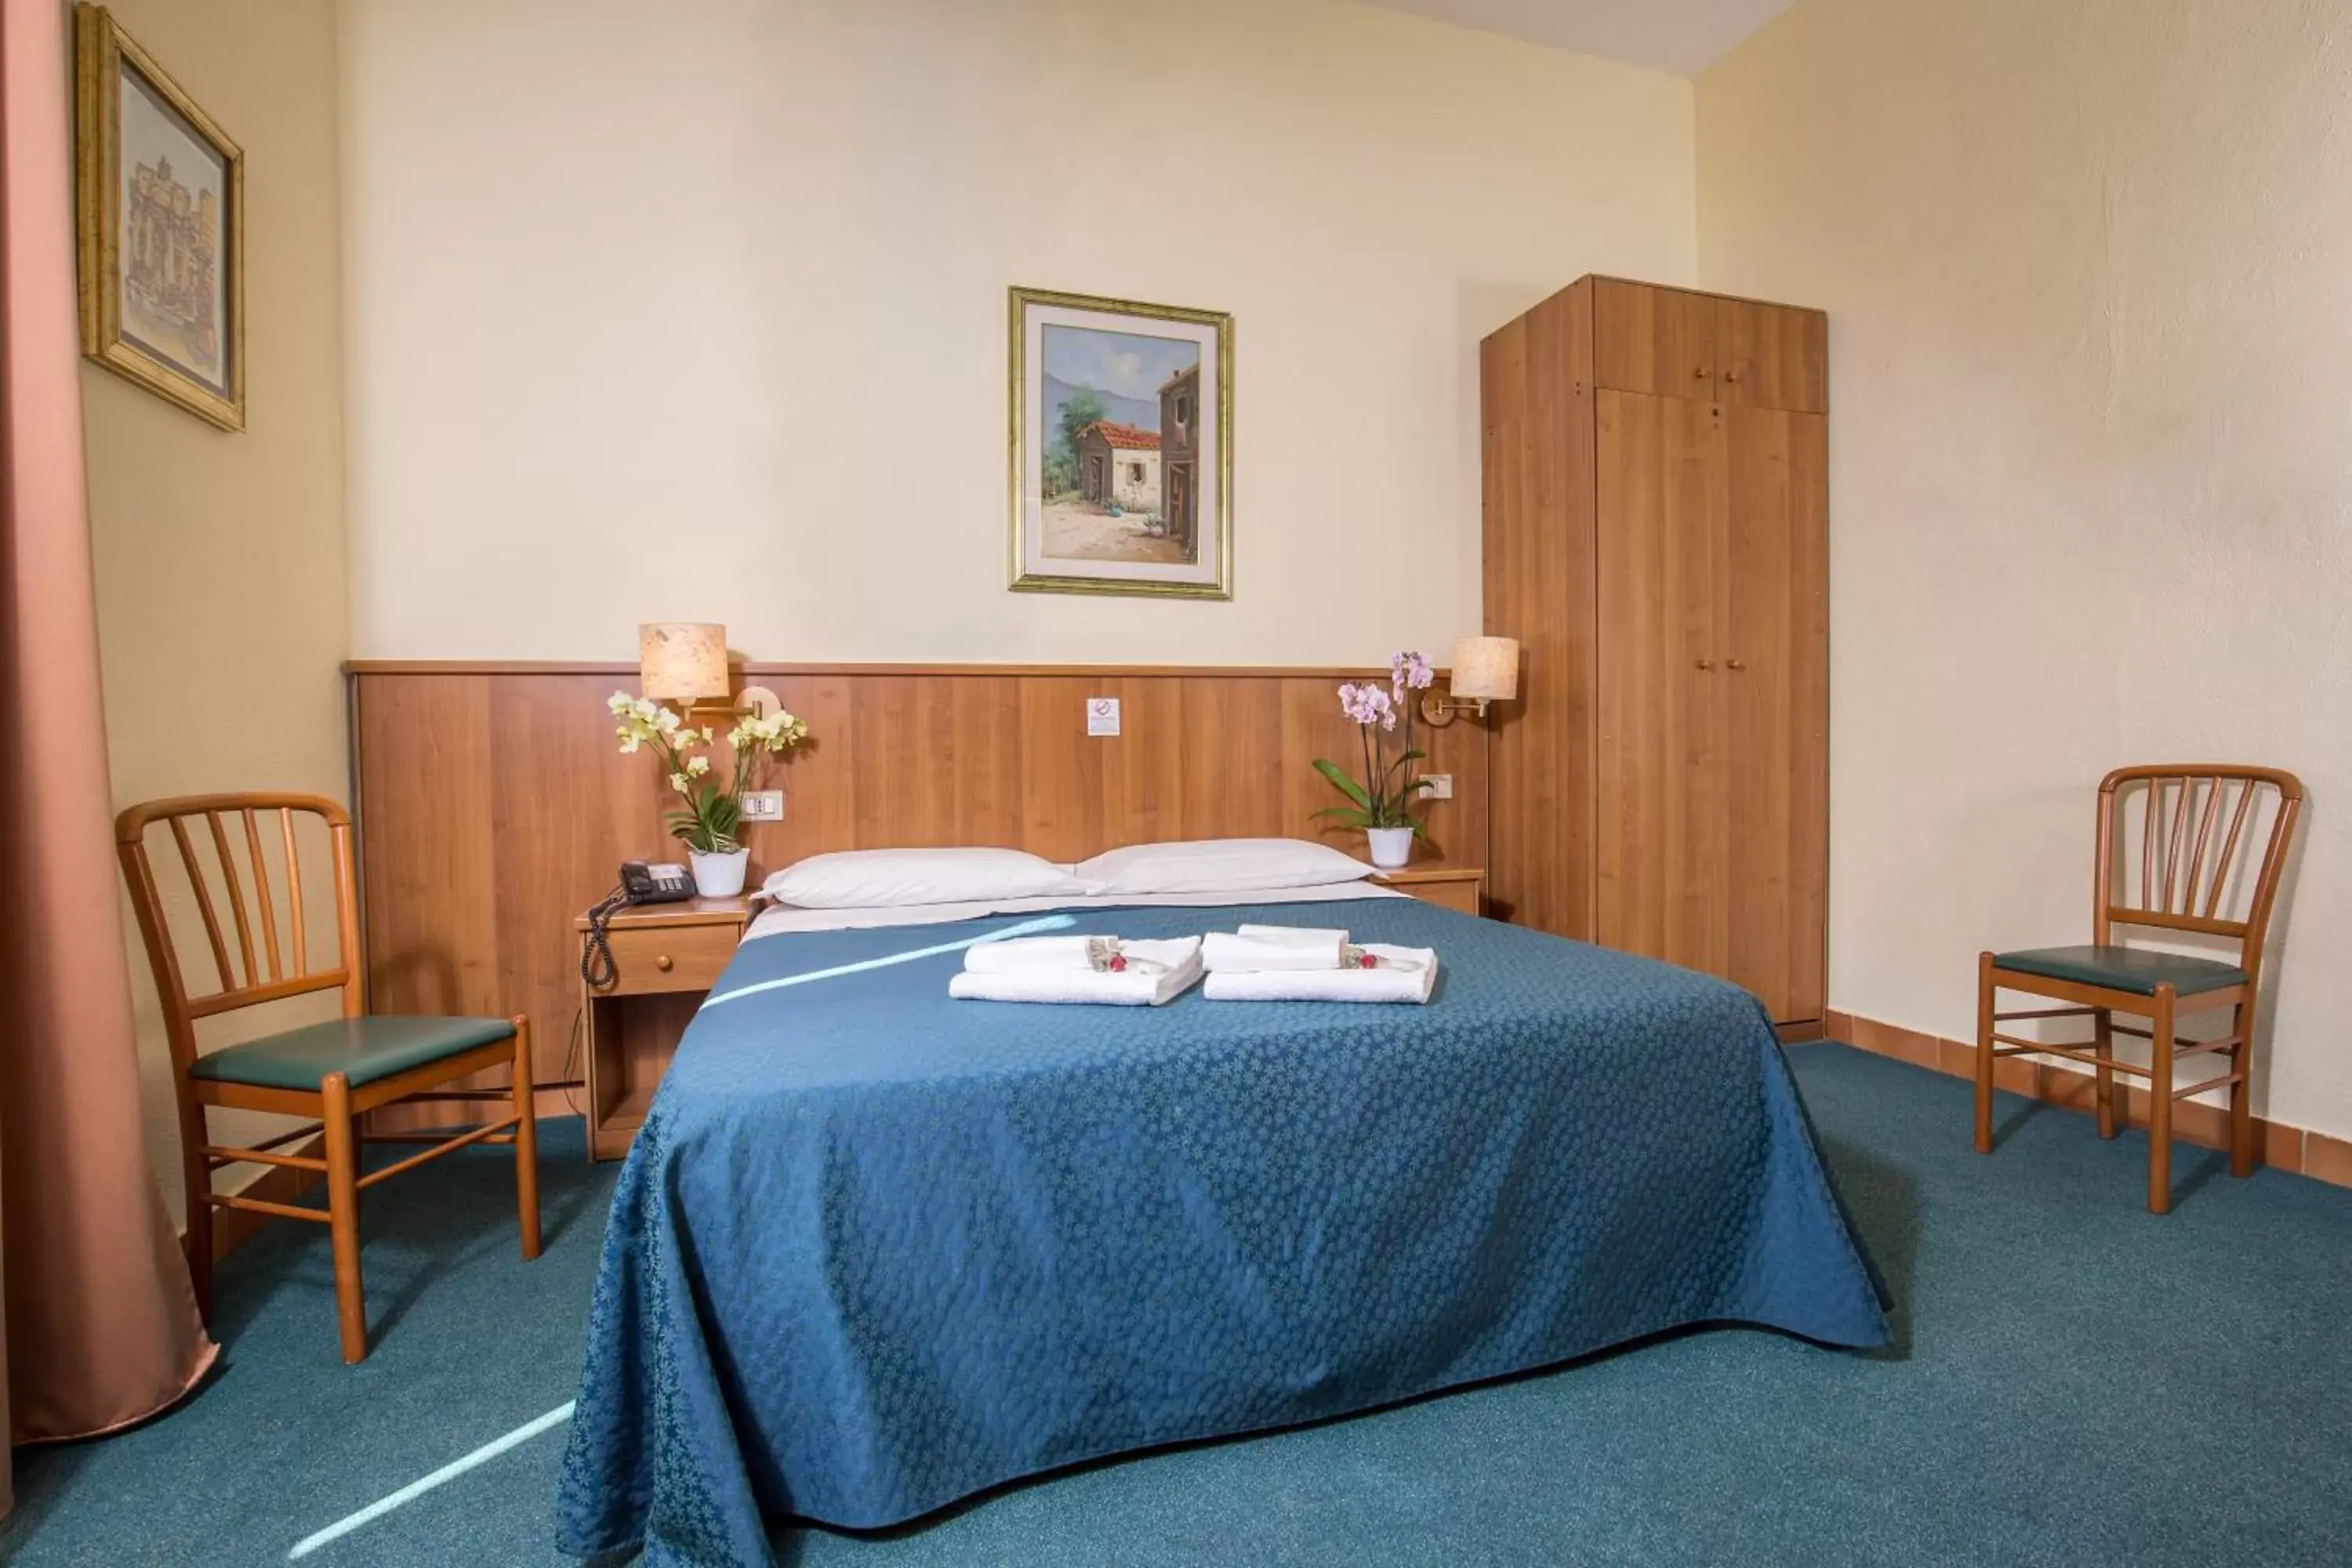 Bed, Room Photo in Hotel Trastevere